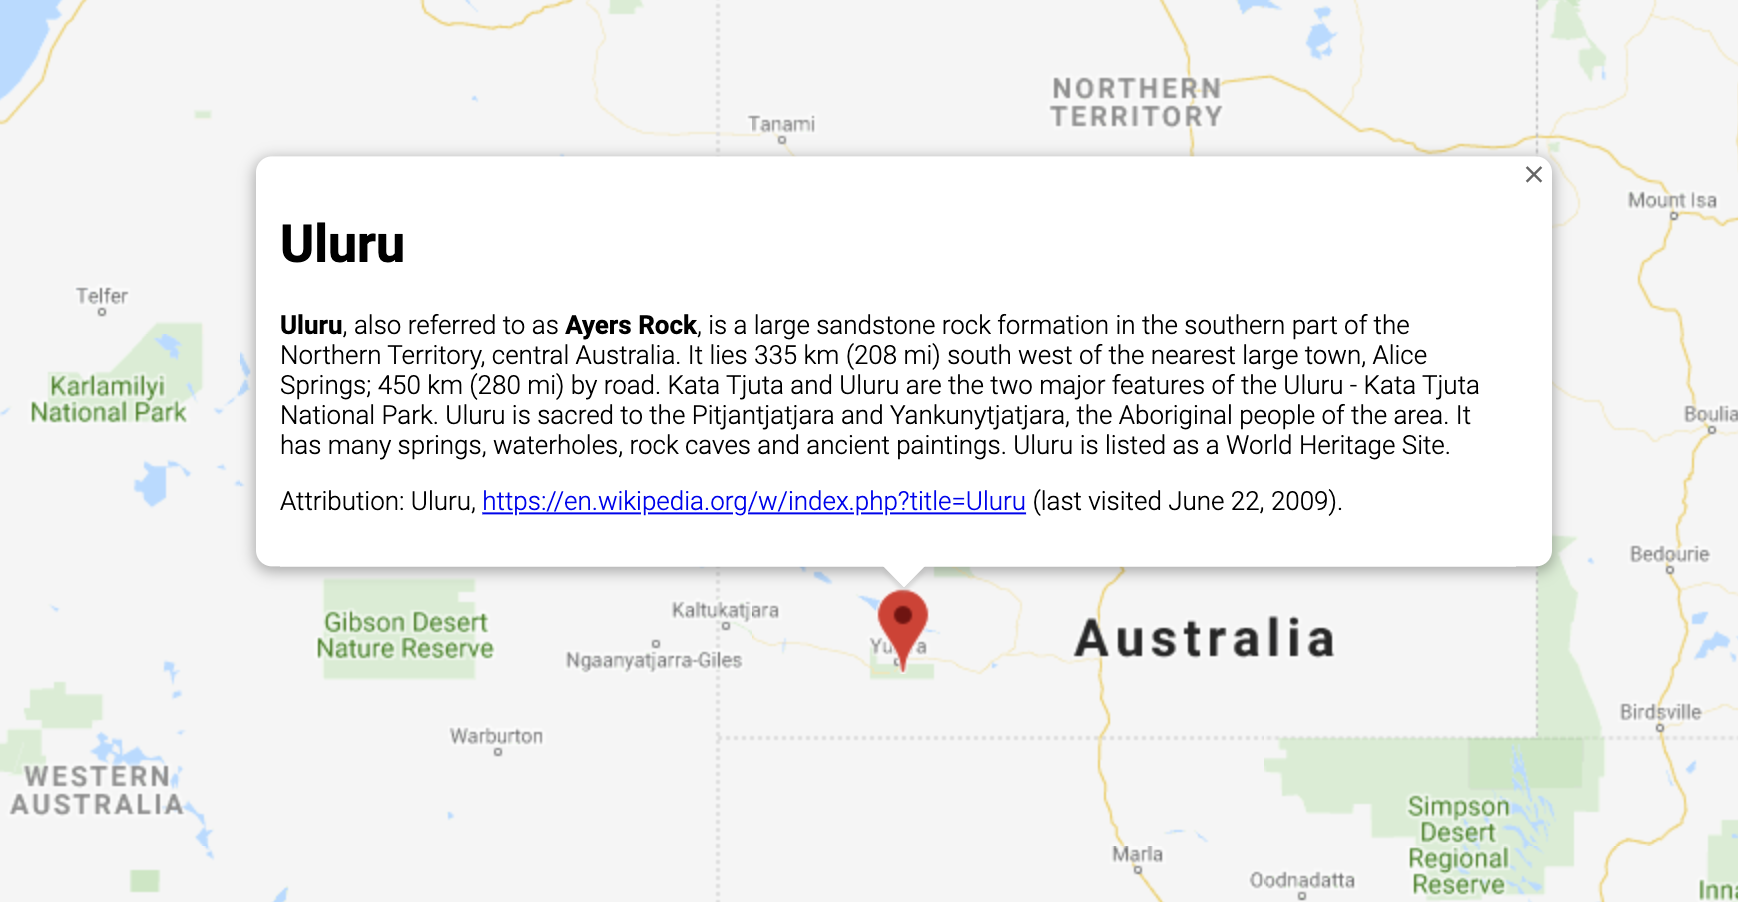 オーストラリア内の場所に関する情報を表示する InfoWindow。